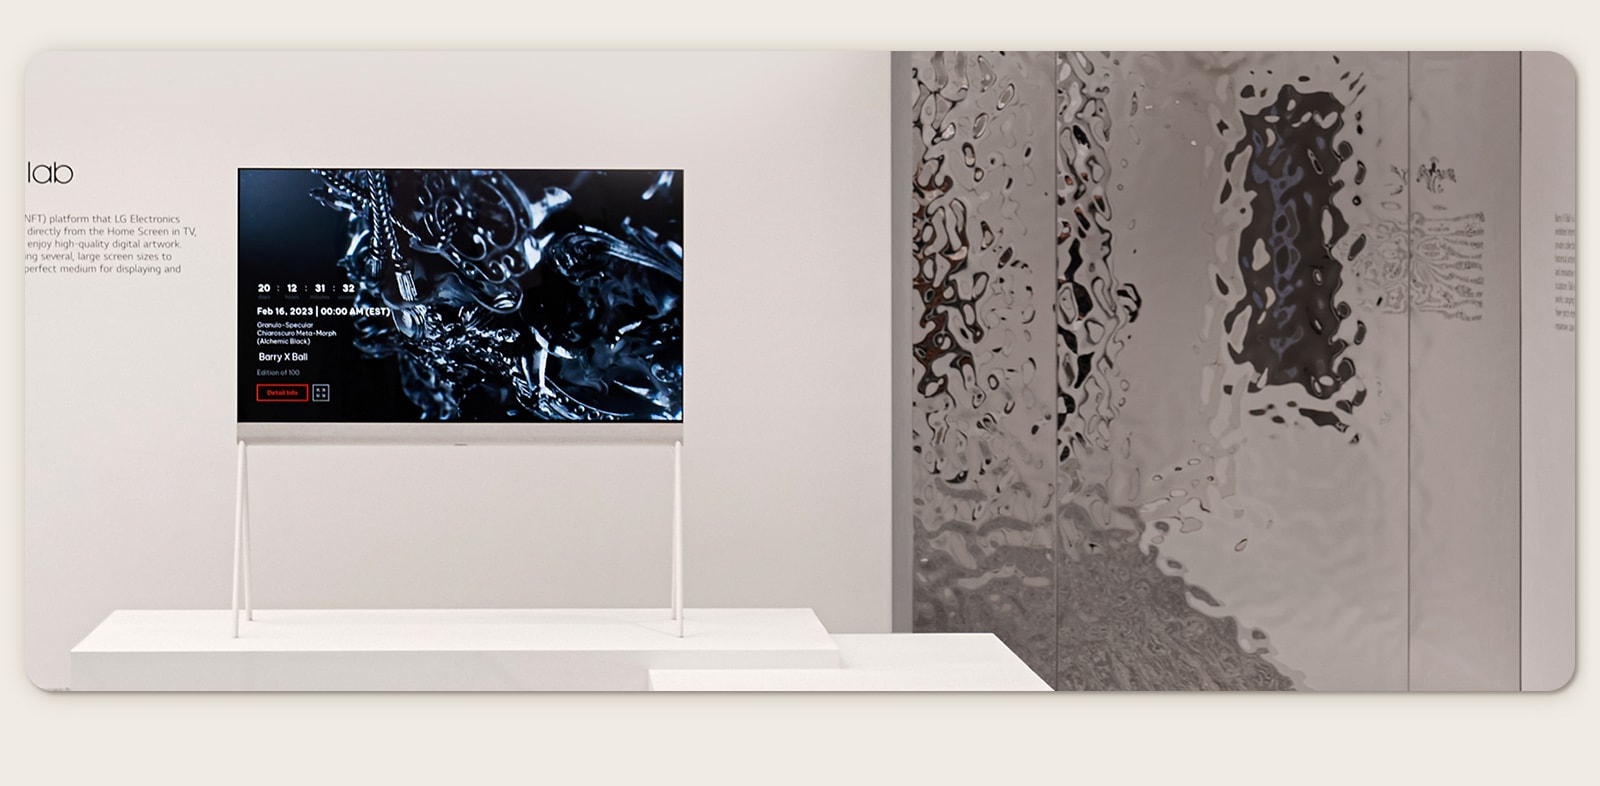 LG OLED Easel trong căn phòng màu trắng chiếu tác phẩm nghệ thuật số về một bức tượng điêu khắc màu đen trên màn hình. Một tác phẩm điêu khắc thực tế màu bạc ở phía bên phải của TV cho thấy hình ảnh phản chiếu của căn phòng. 